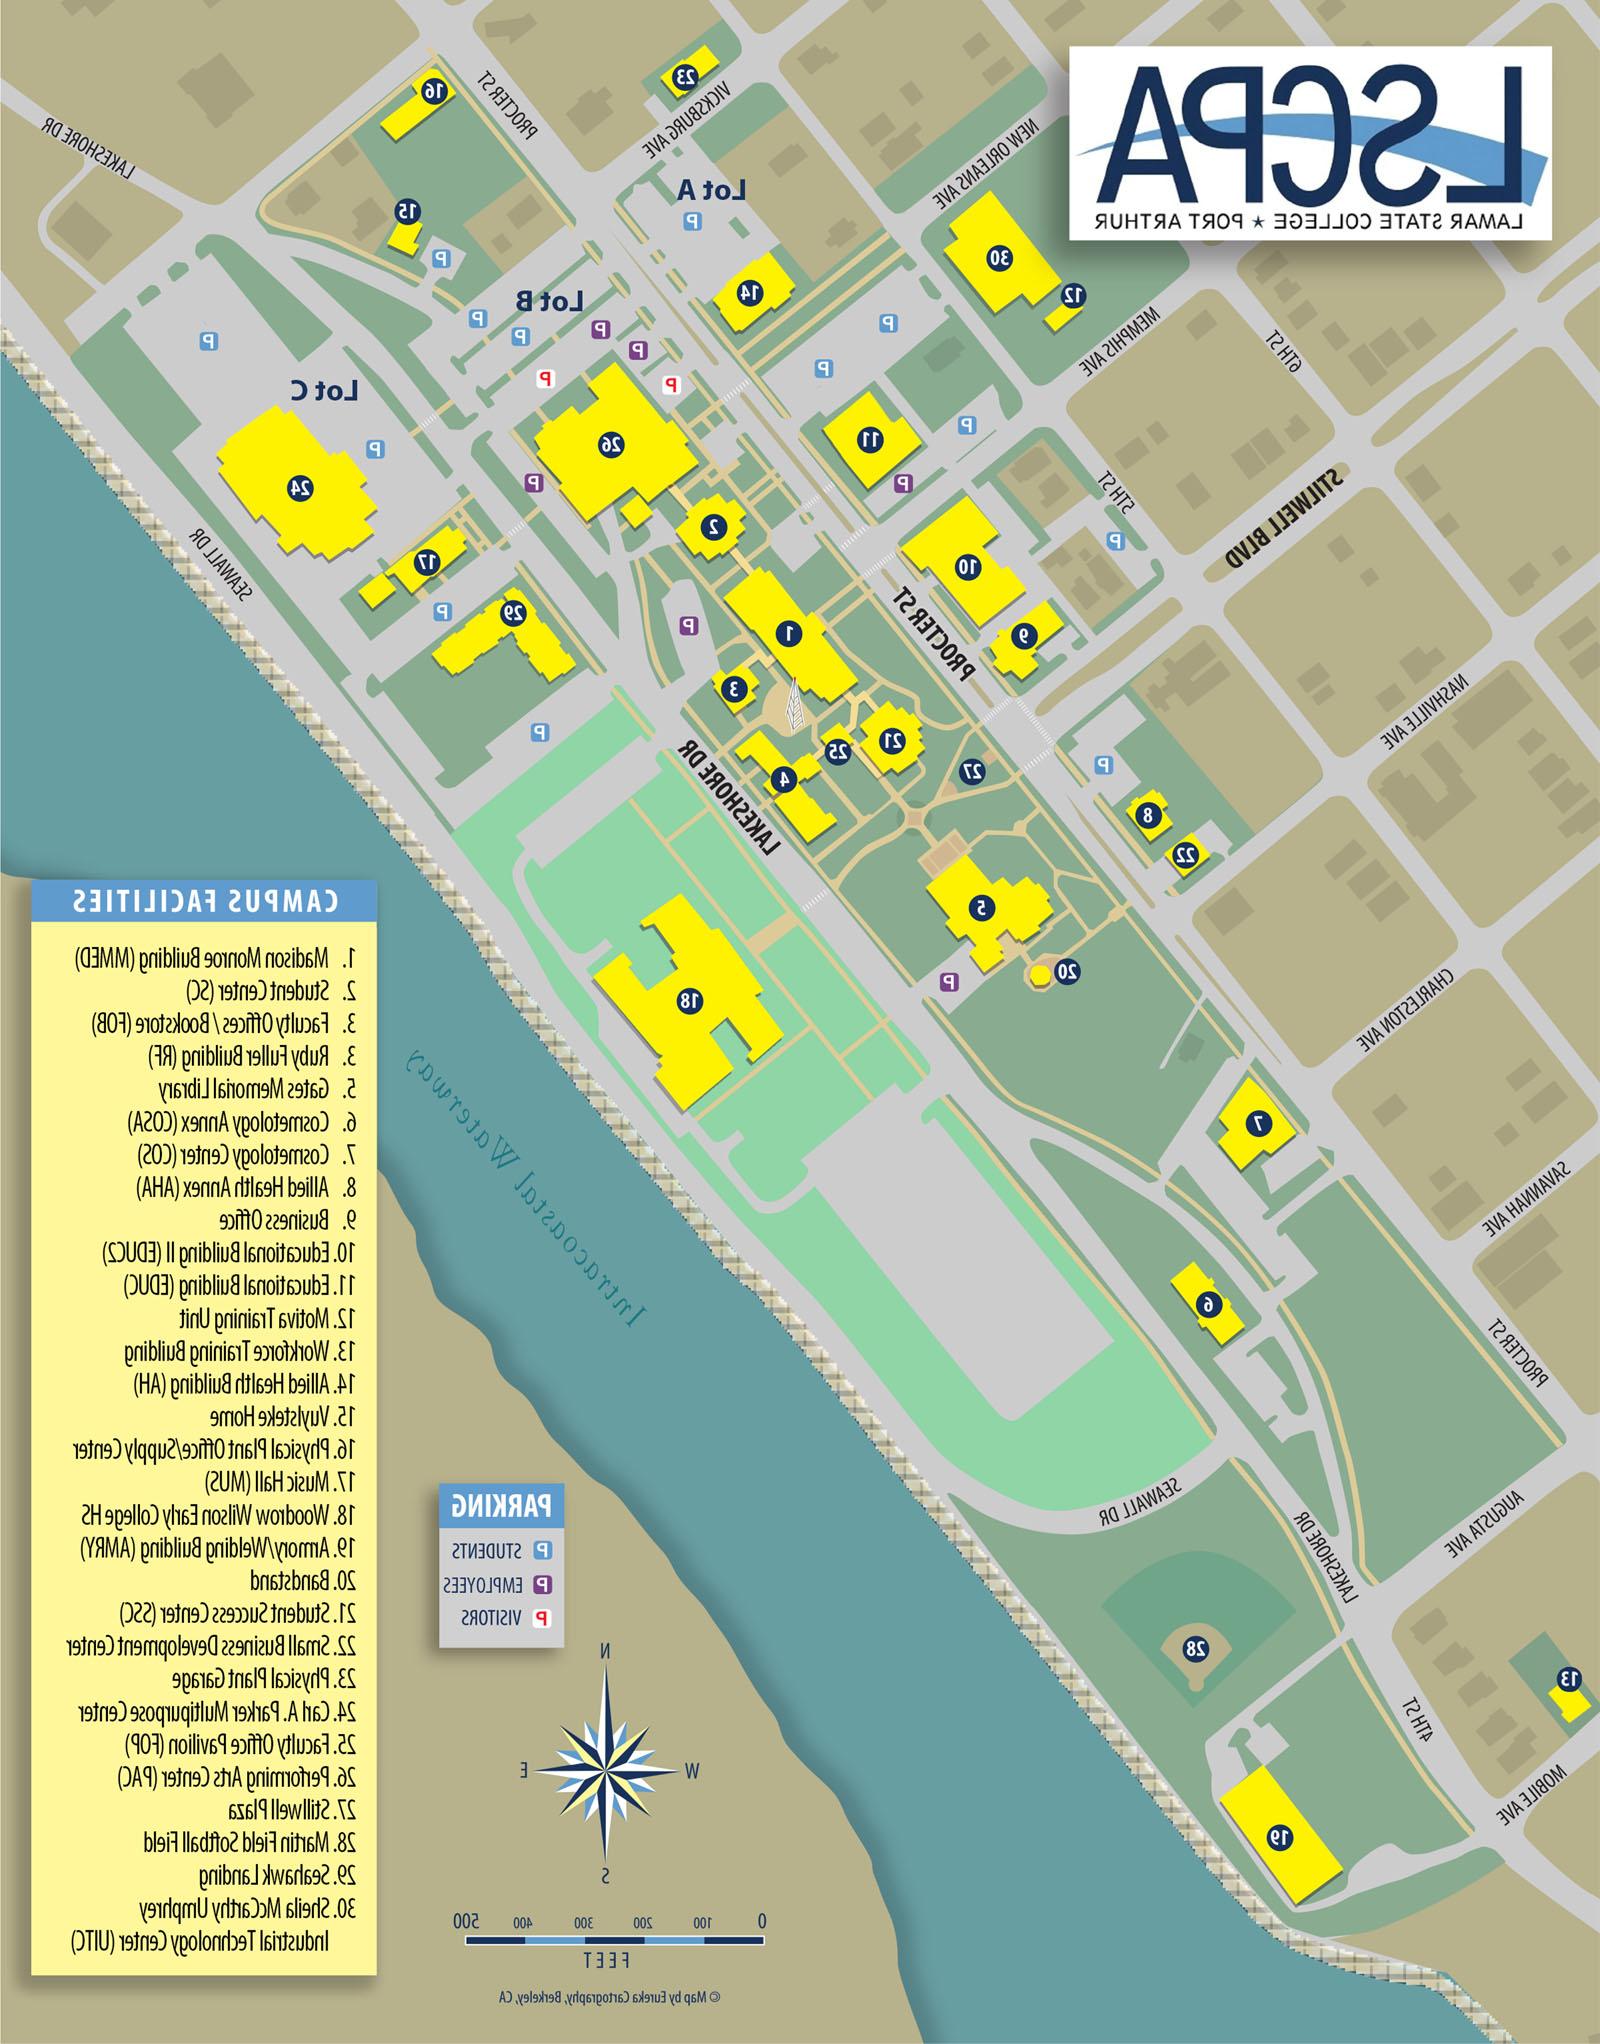 校园地图显示建筑物和停车场.